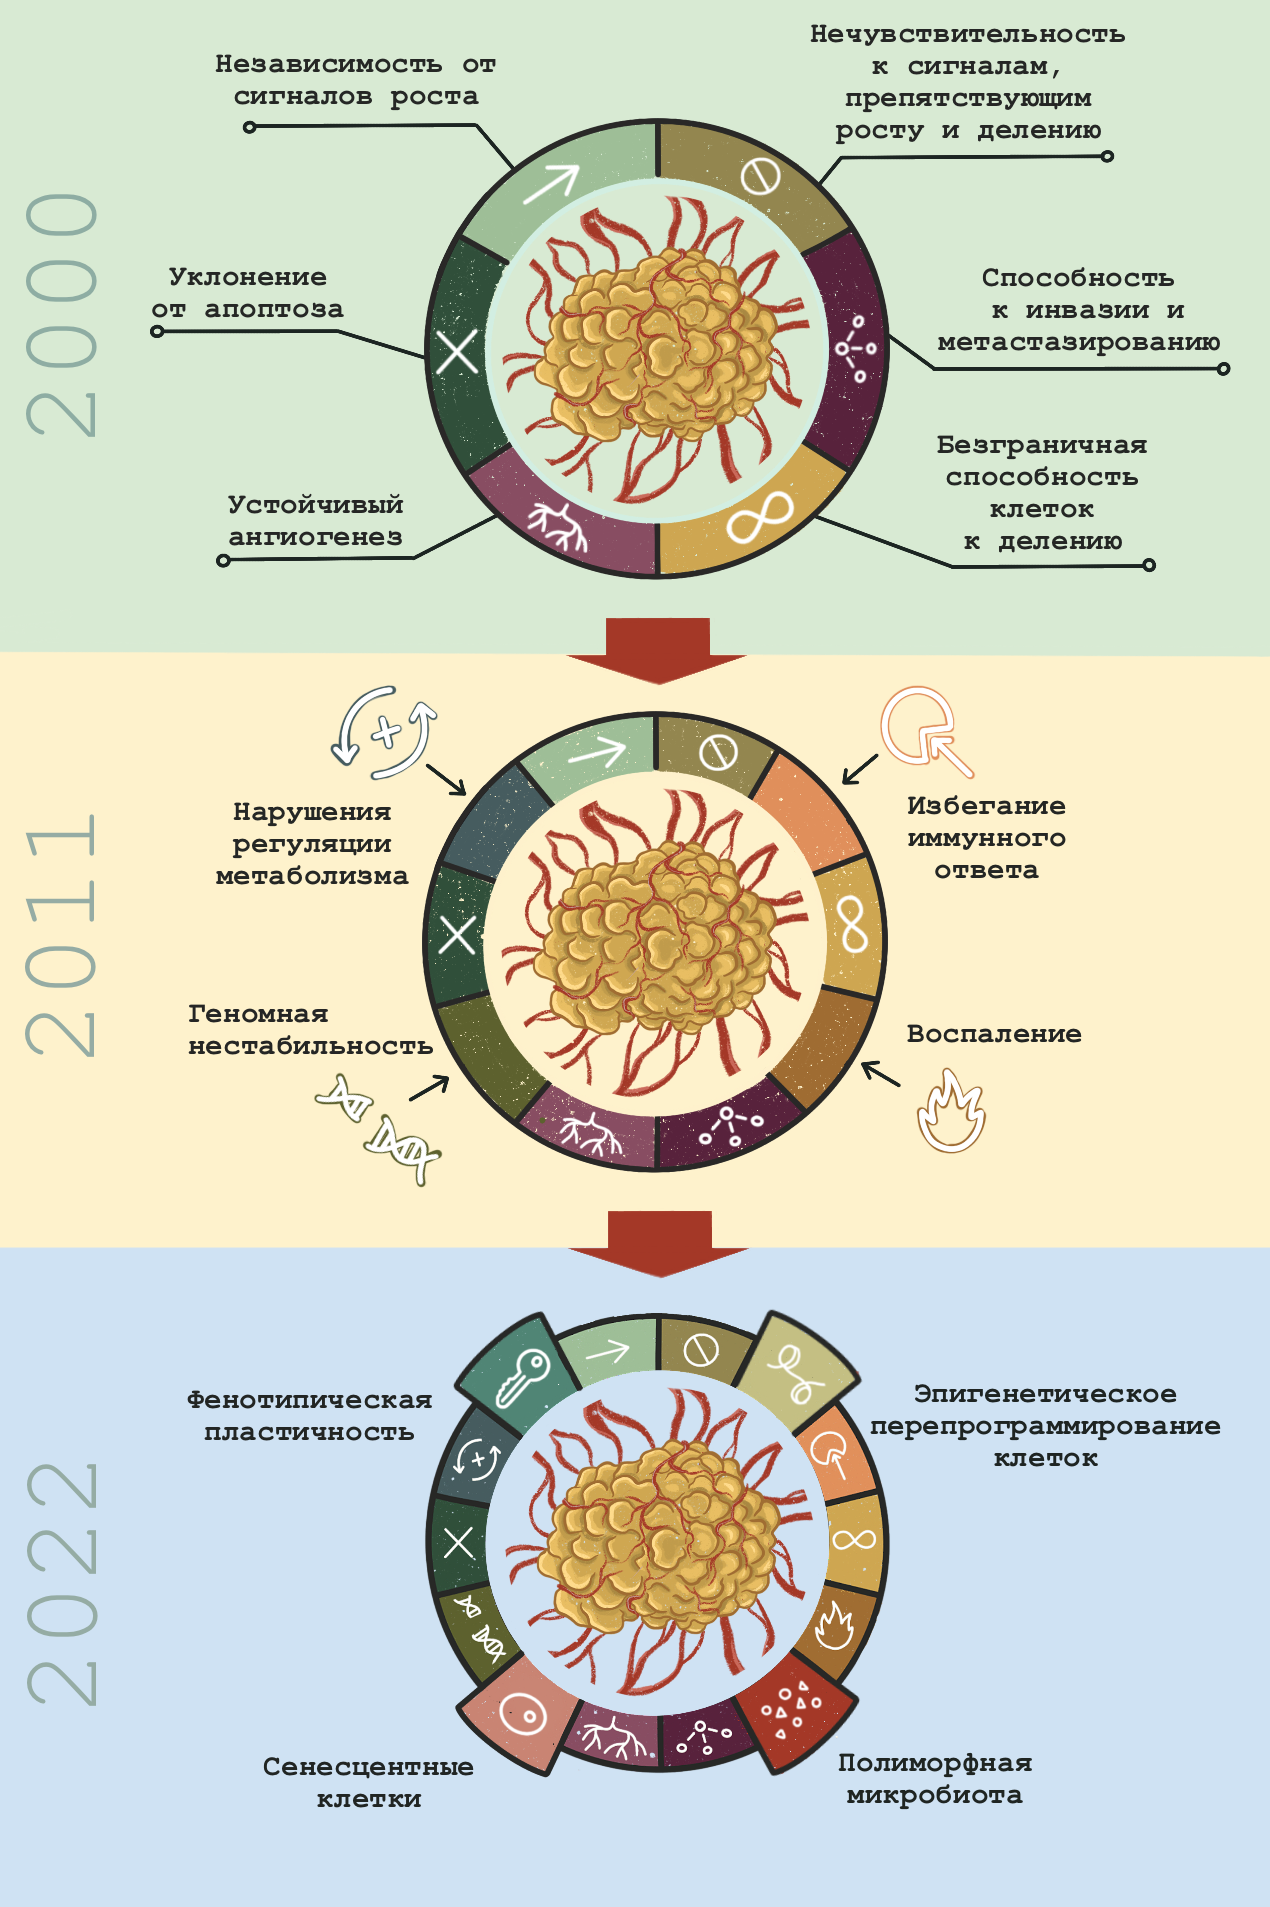 Эволюция концепции ключевых признаков рака от 2000 до 2022 года